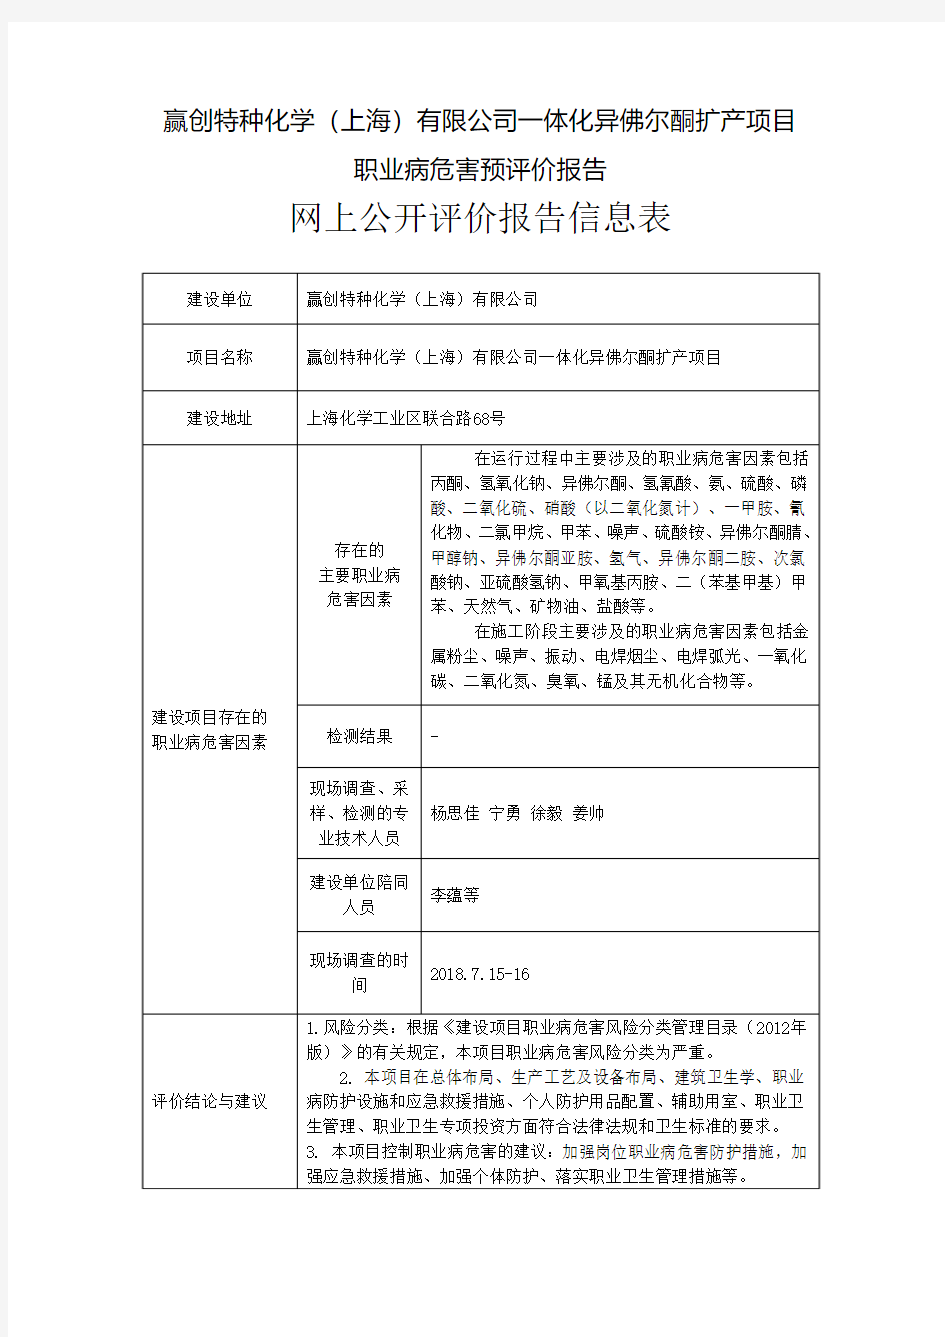 赢创特种化学(上海)有限公司一体化异佛尔酮扩产项目